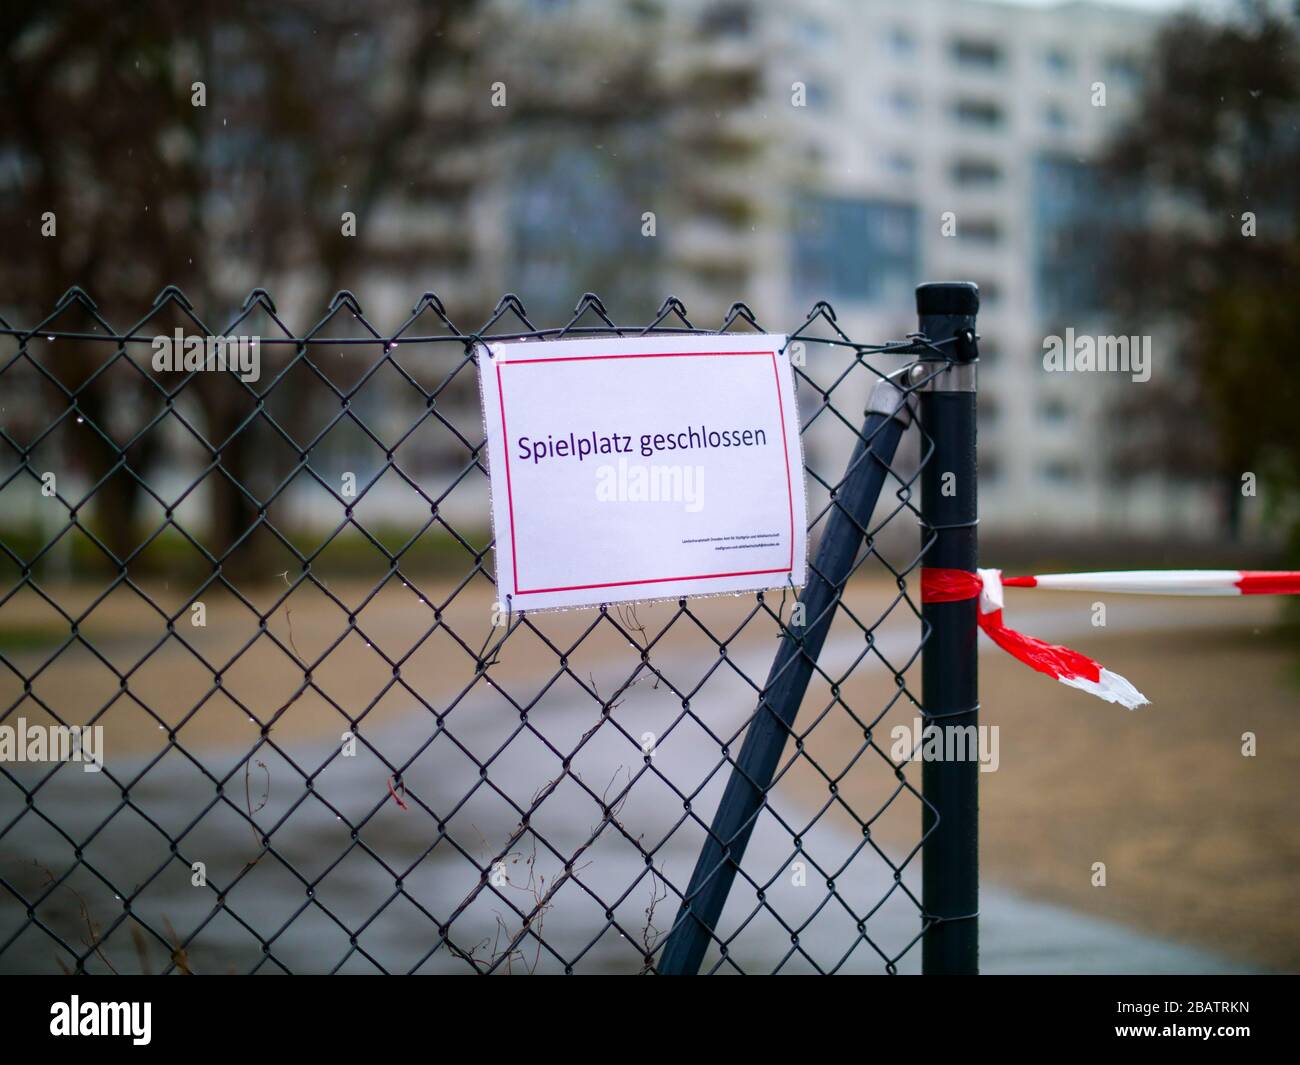 Spielplatz geschlossen wegen Coronavirus Lockdown Ausgangssperre Stock Photo